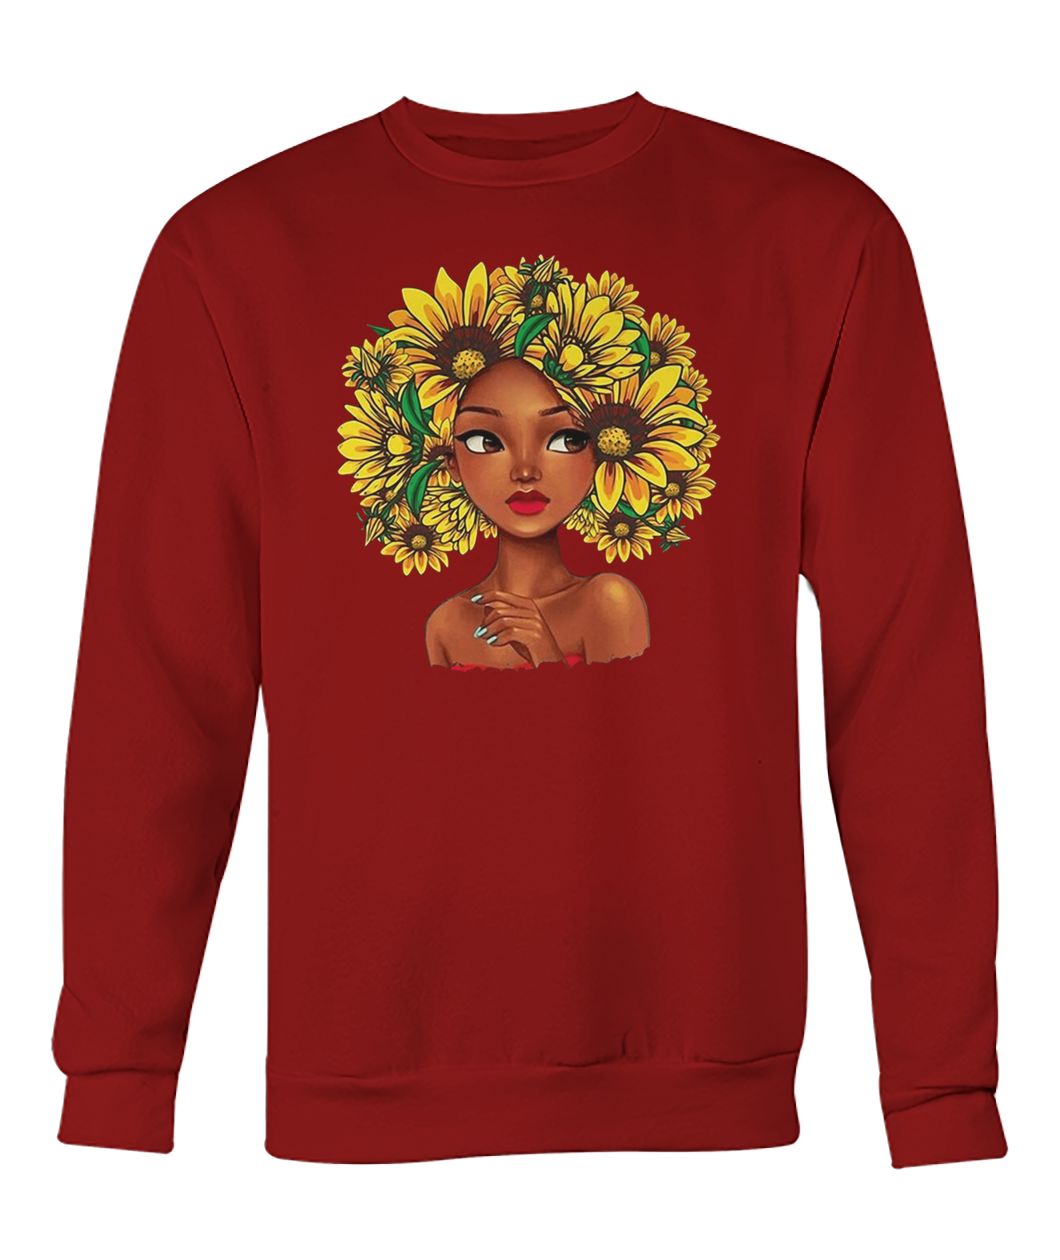 Sunflower natural hair for black girl crew neck sweatshirt